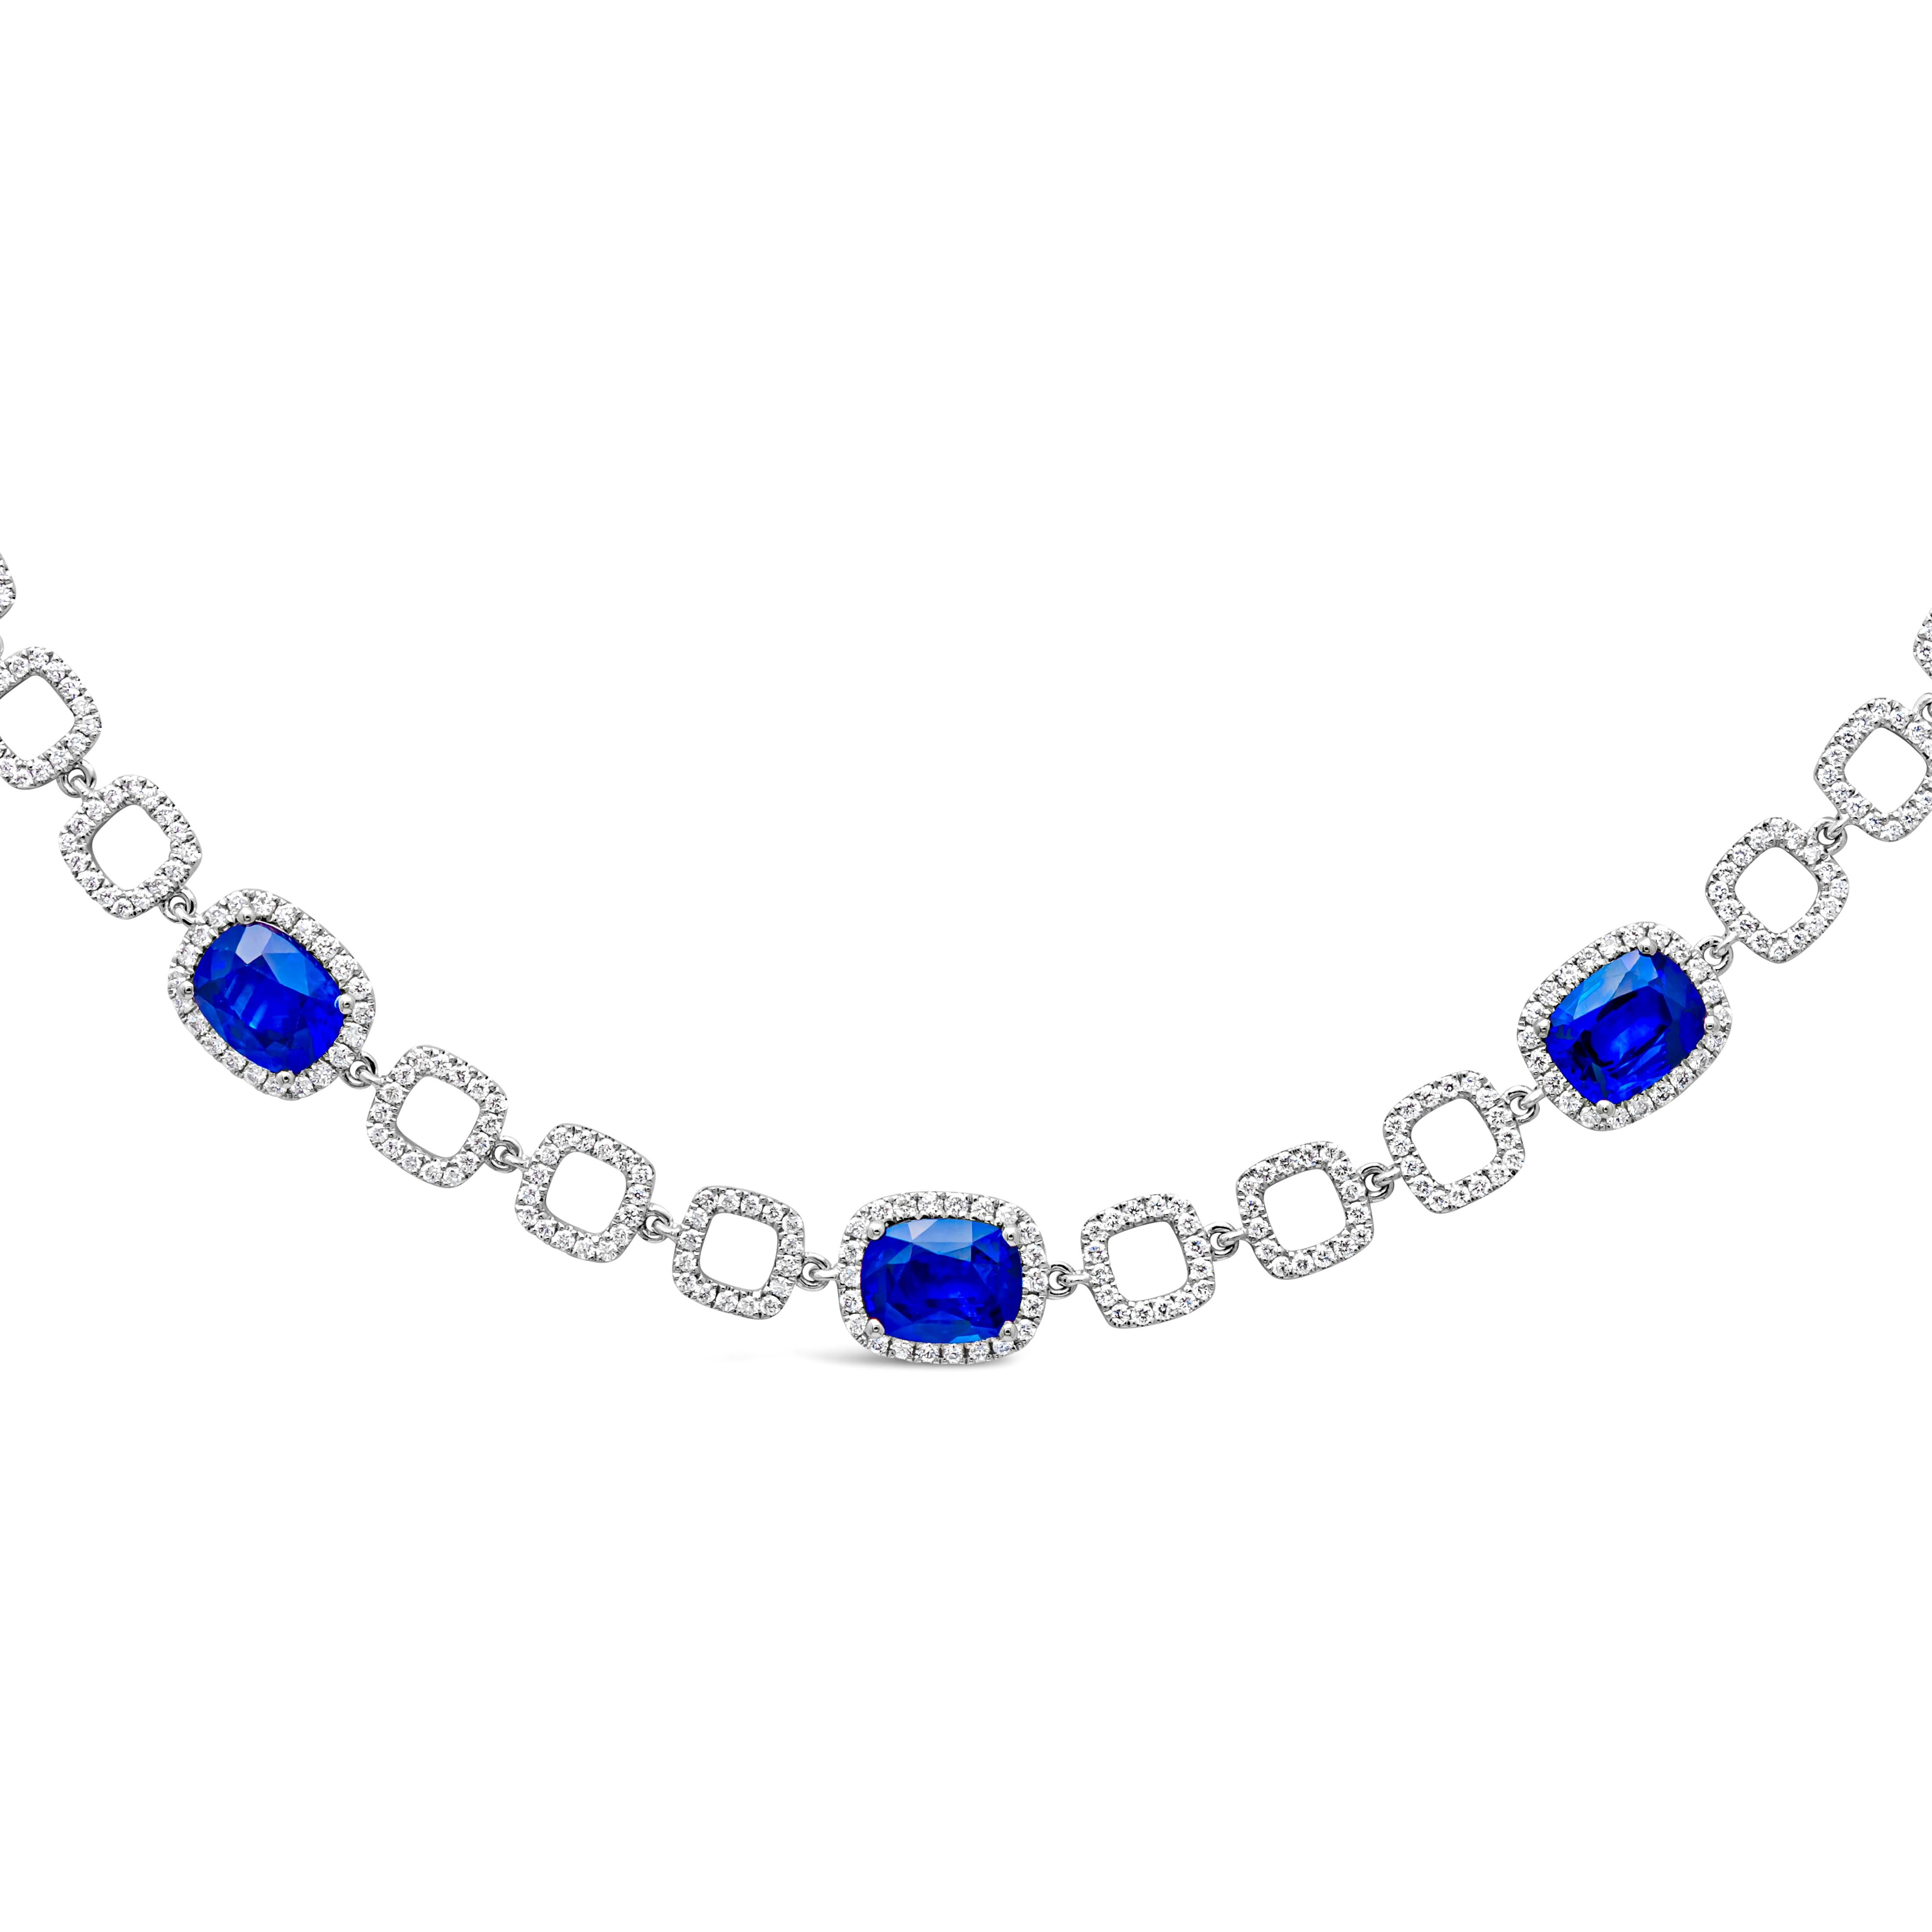 Eine modische und atemberaubende Tennis-Line-Halskette mit 7 blauen Saphiren im Kissenschliff mit einem Gesamtgewicht von 7,975 Karat, gefasst in einer klassischen vierzackigen Korbfassung und umgeben von Diamanten im Brillantrundschliff in einem